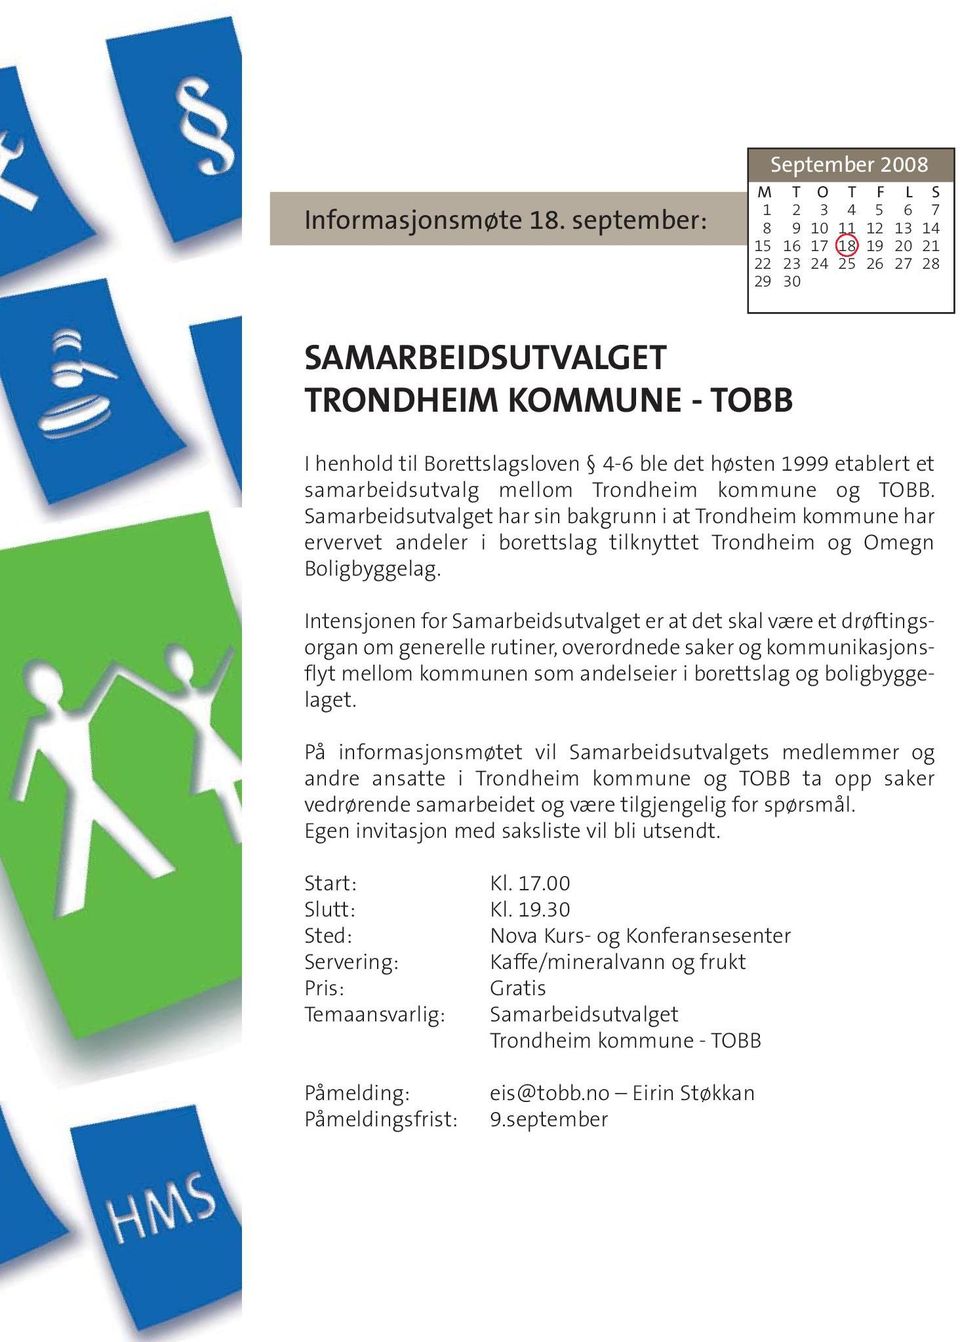 høsten 1999 etablert et samarbeidsutvalg mellom Trondheim kommune og TOBB.